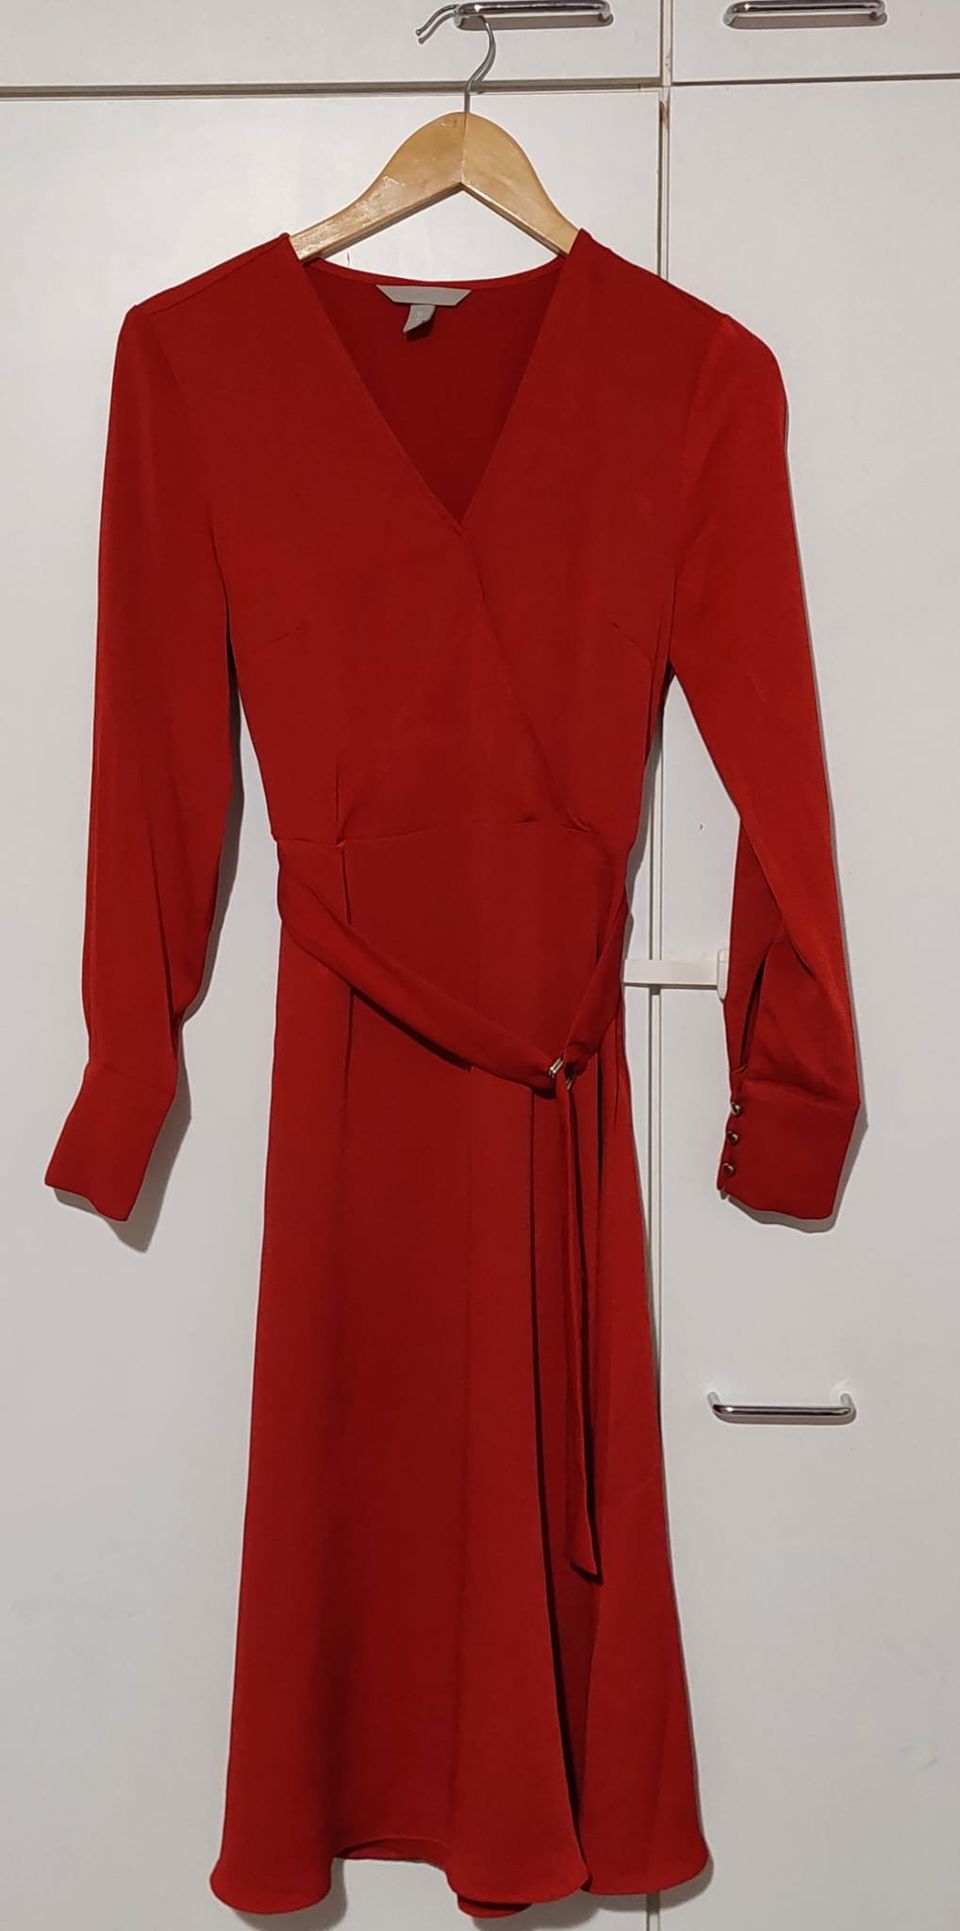 Red Midi dress